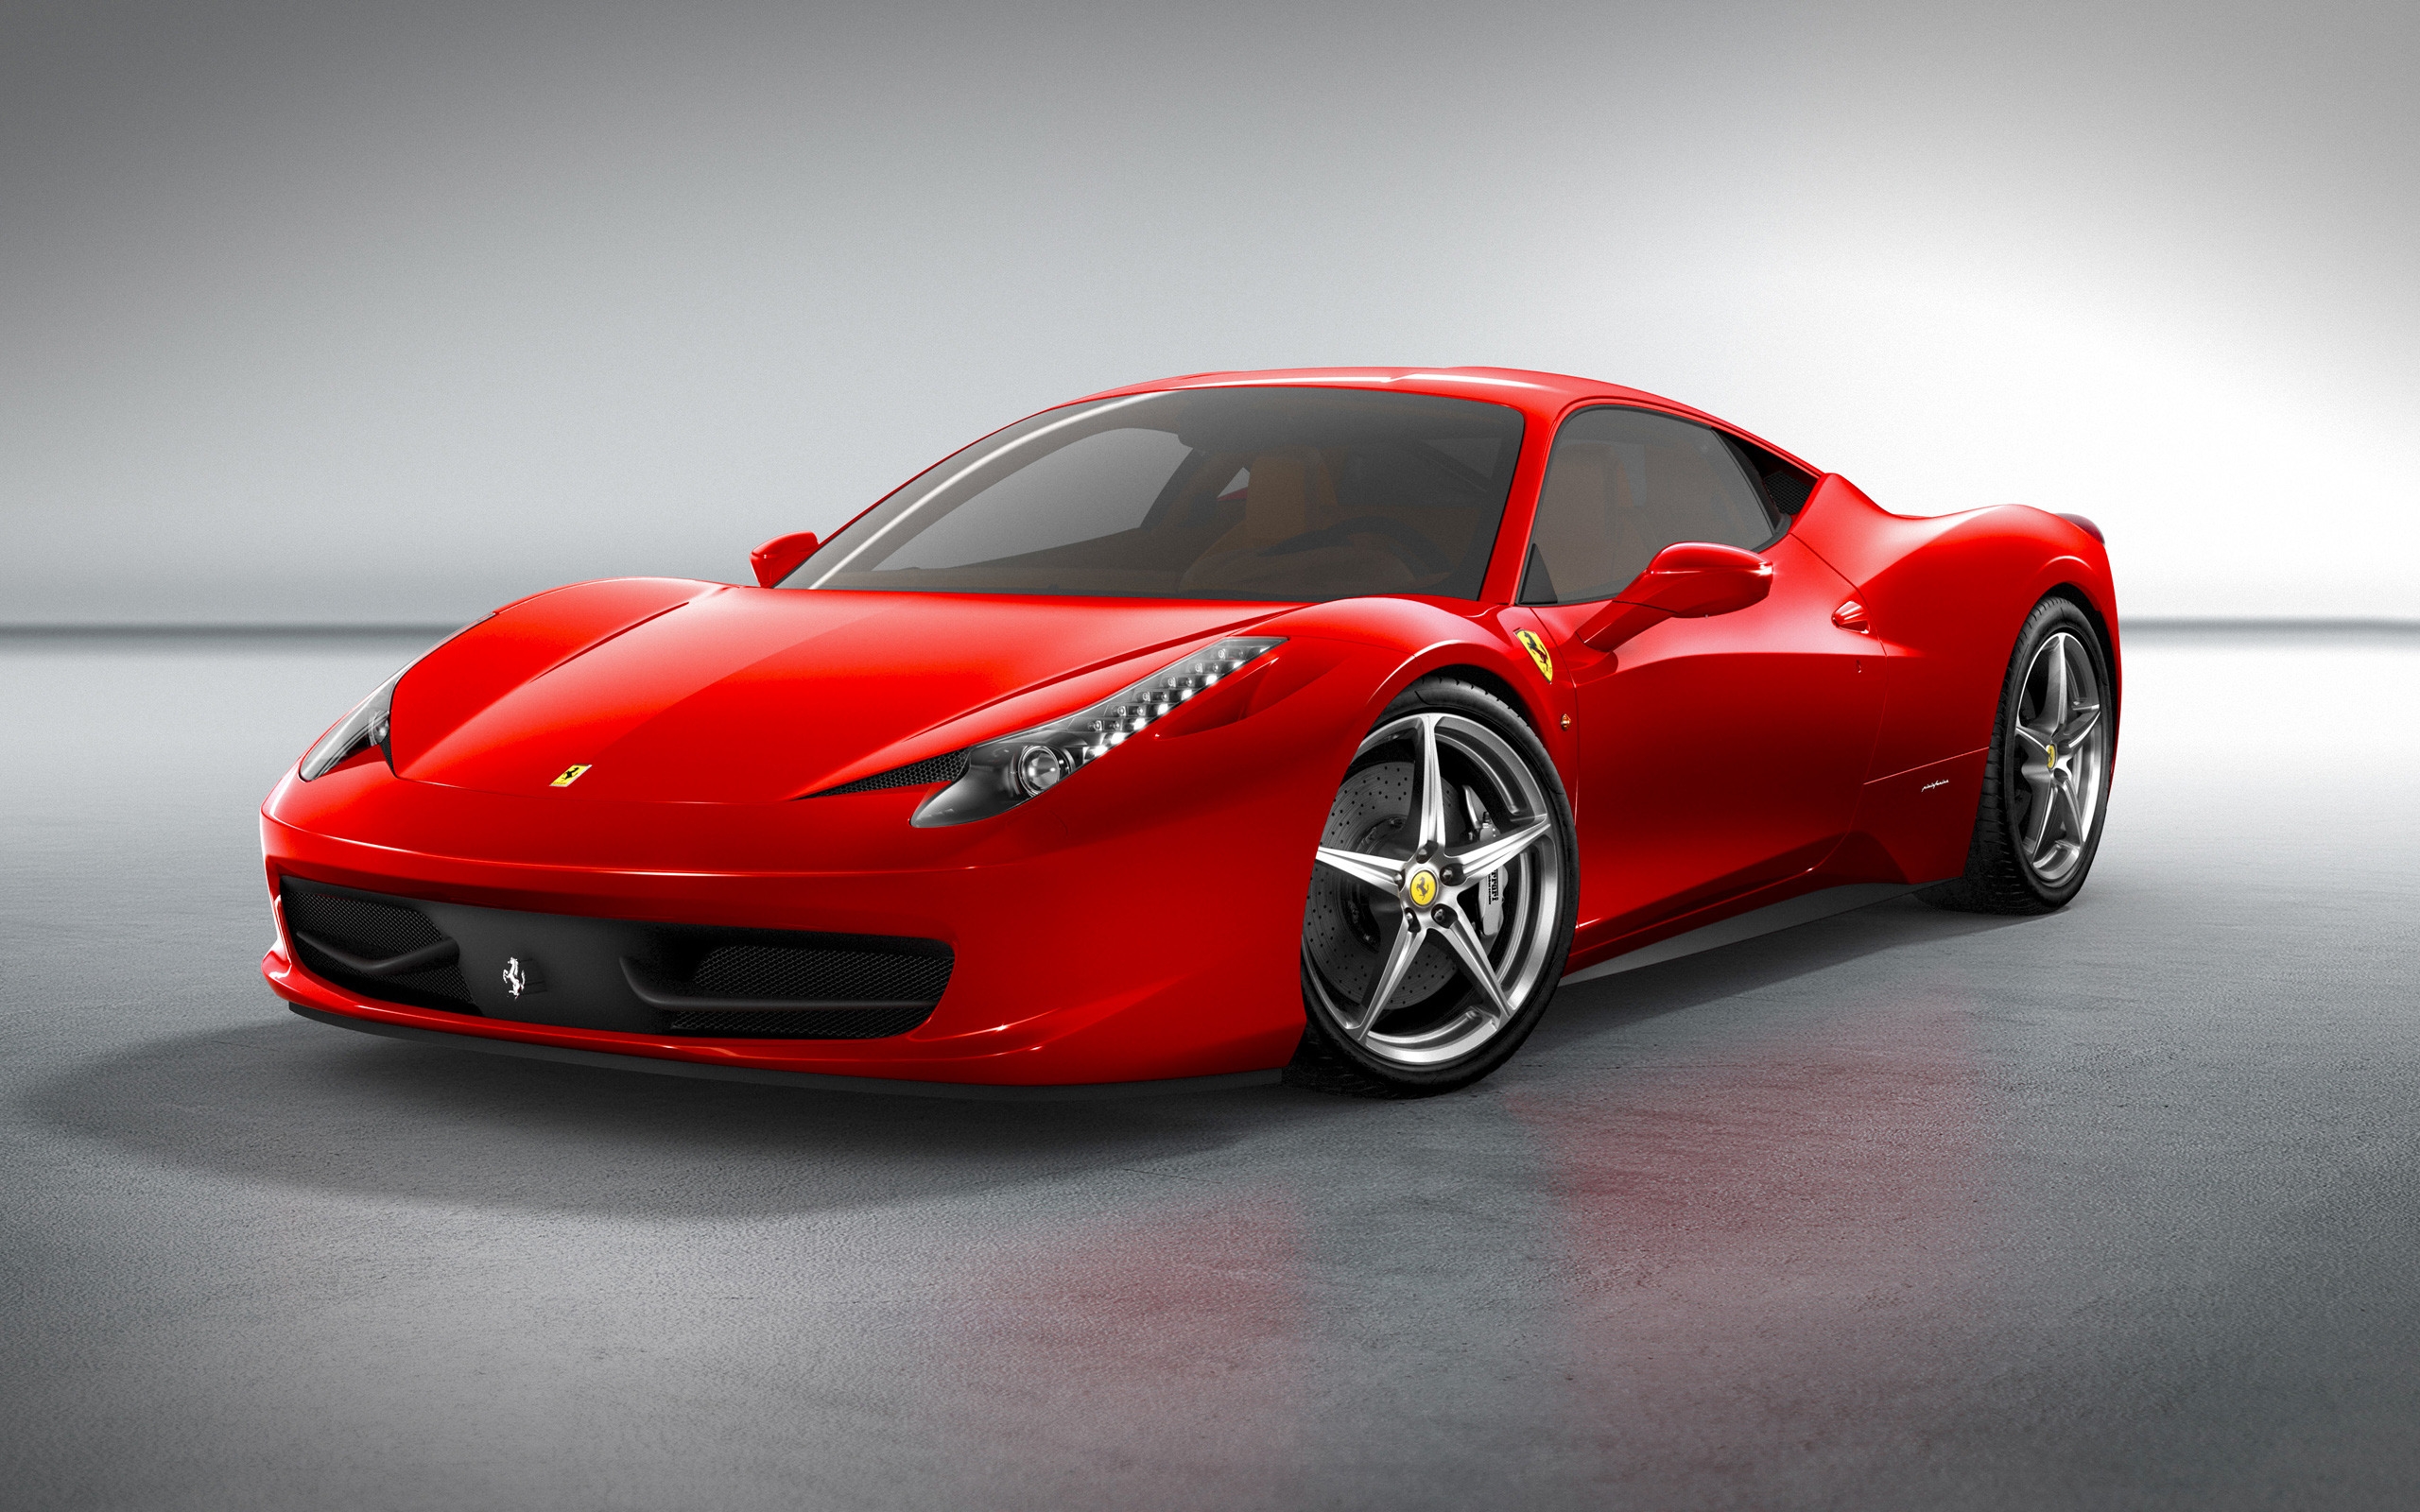 Ferrari 458 Italia Front for 2560 x 1600 widescreen resolution